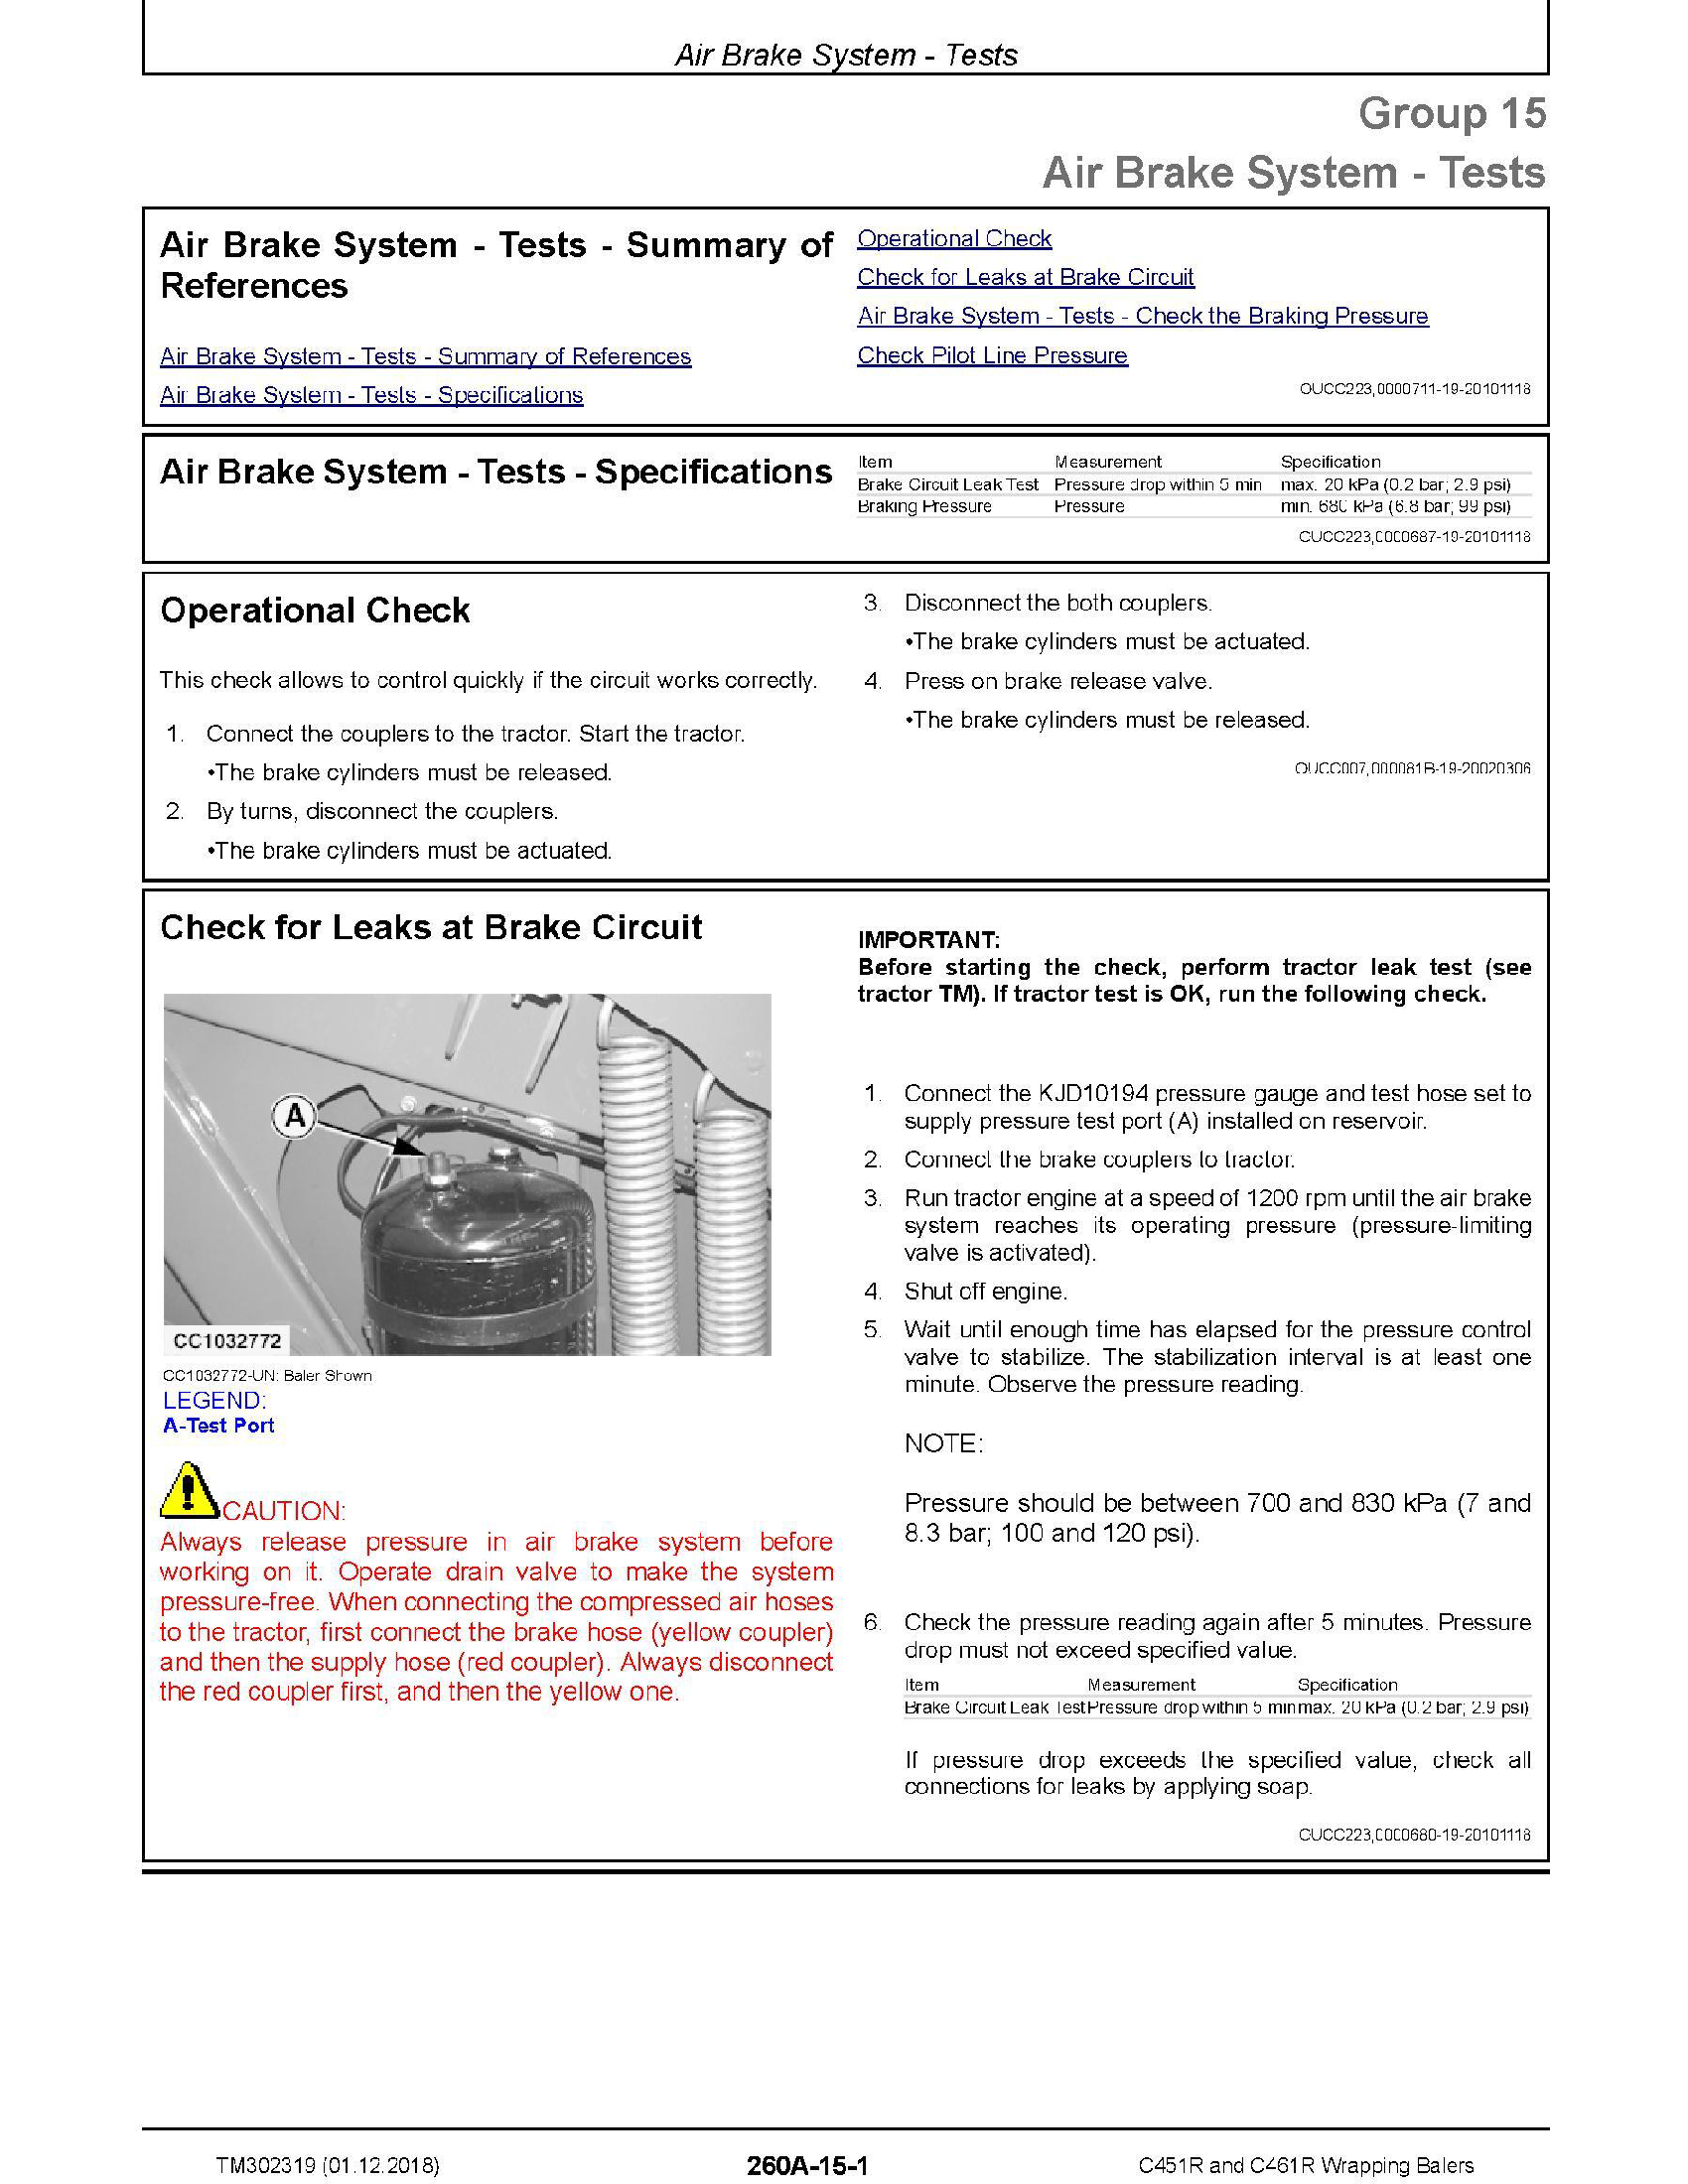 John Deere 650J manual pdf